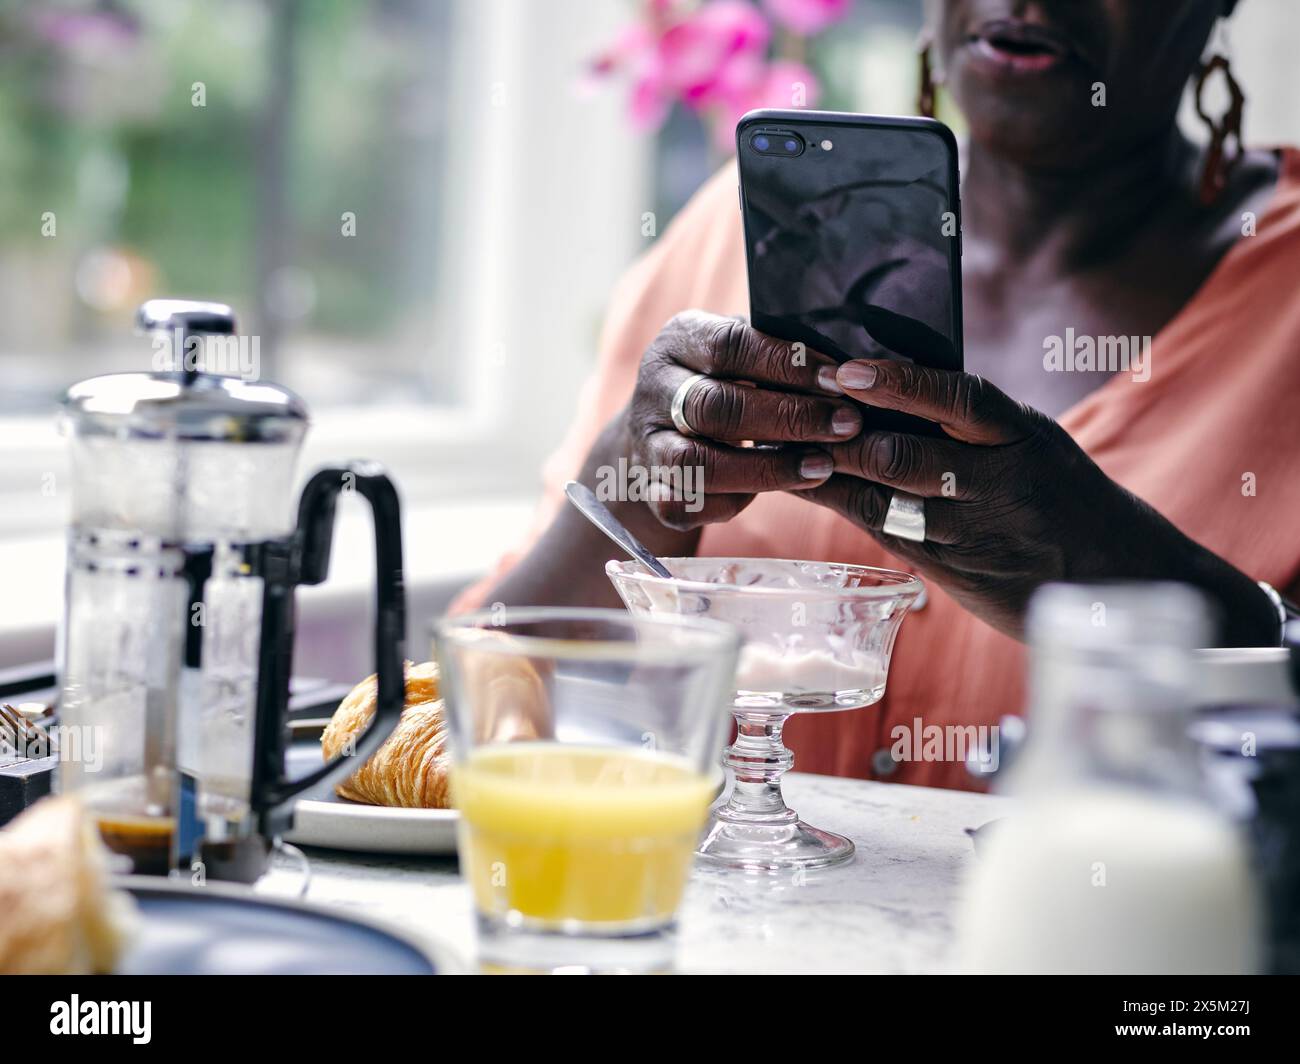 Großbritannien, Nahaufnahme einer Frau, die ihr Smartphone am Frühstückstisch im Hotel hält Stockfoto